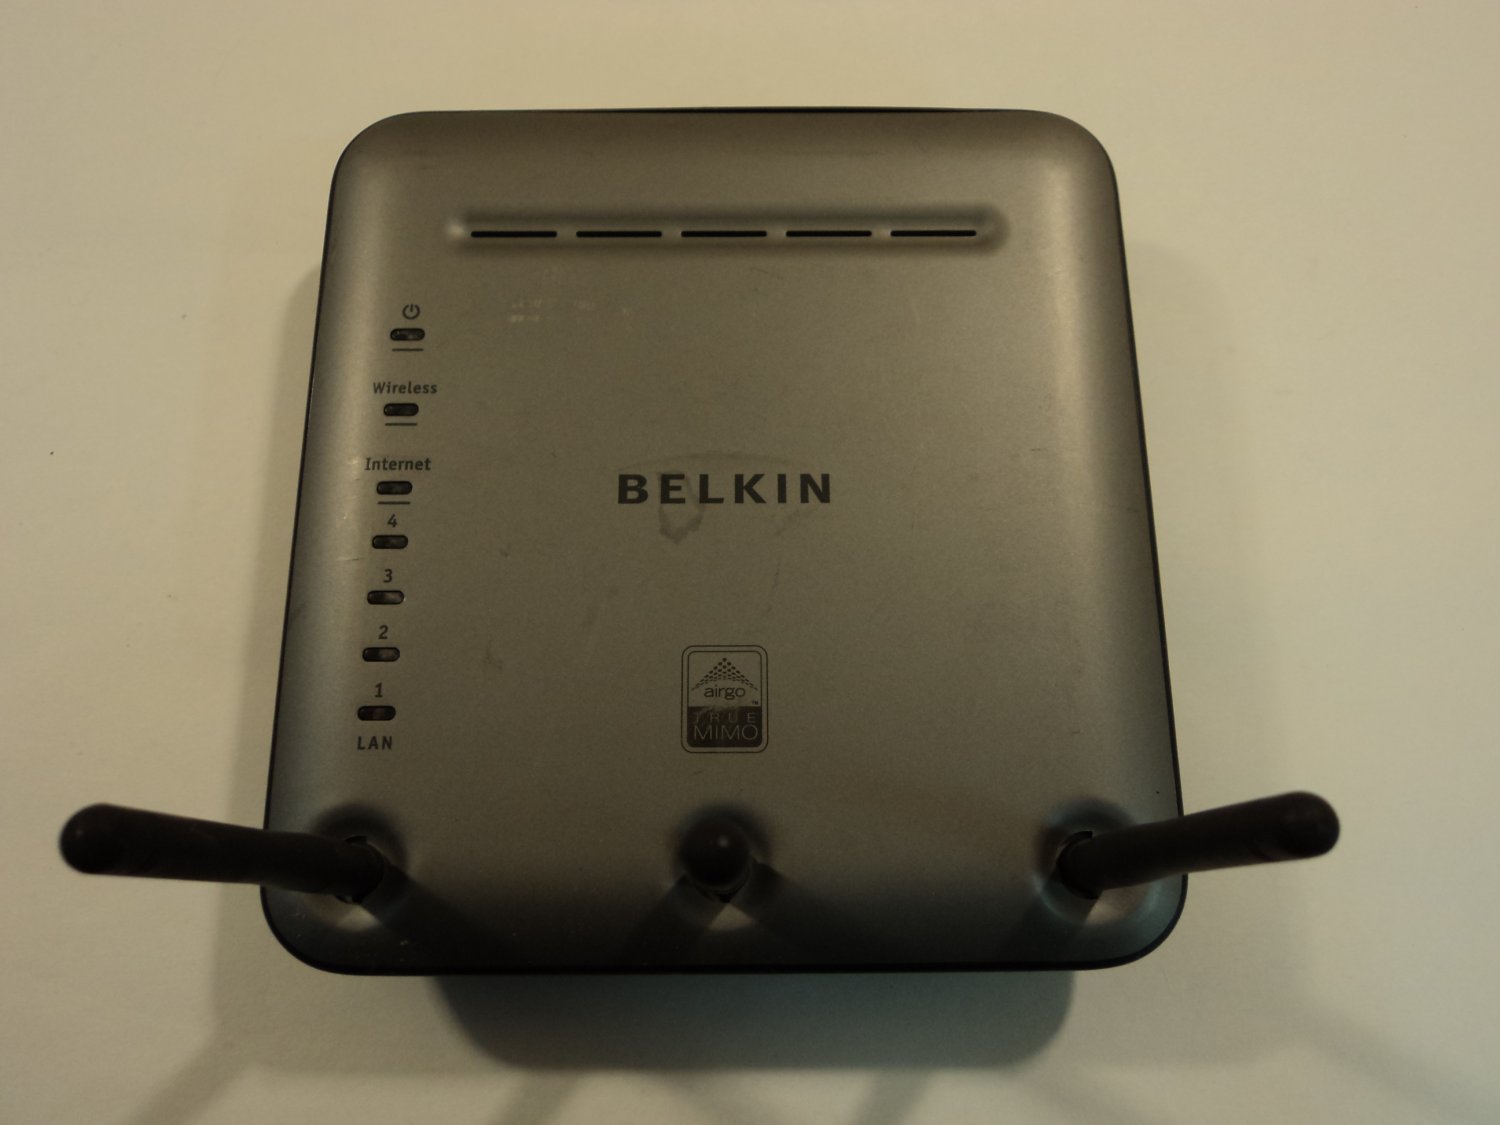 Belkin Wireless Pre-N Router Firmware Update